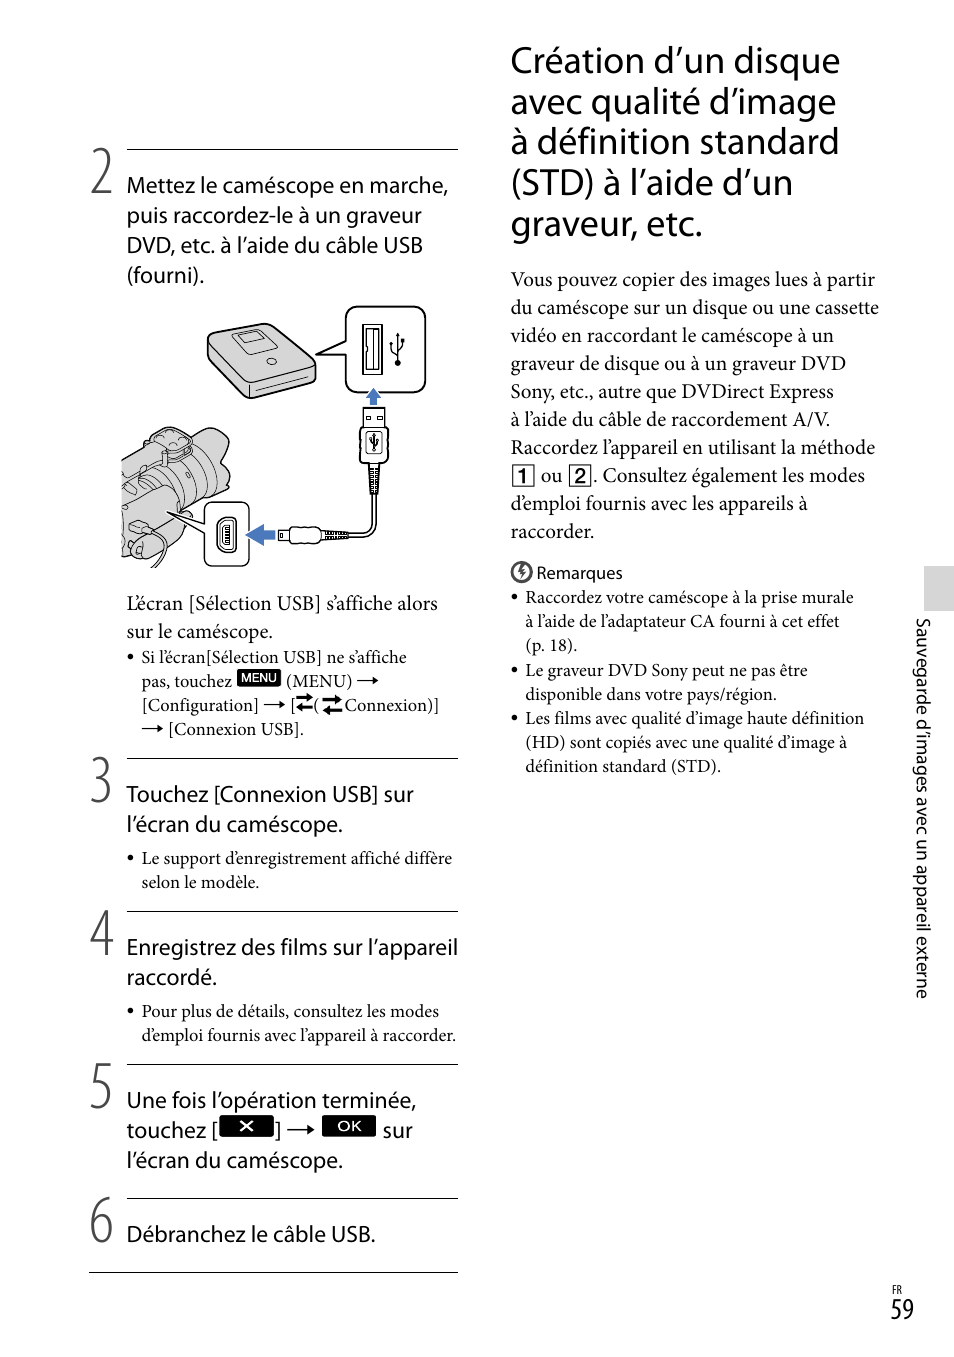 Graveur, etc | Sony NEX-VG20H Manuel d'utilisation | Page 137 / 163